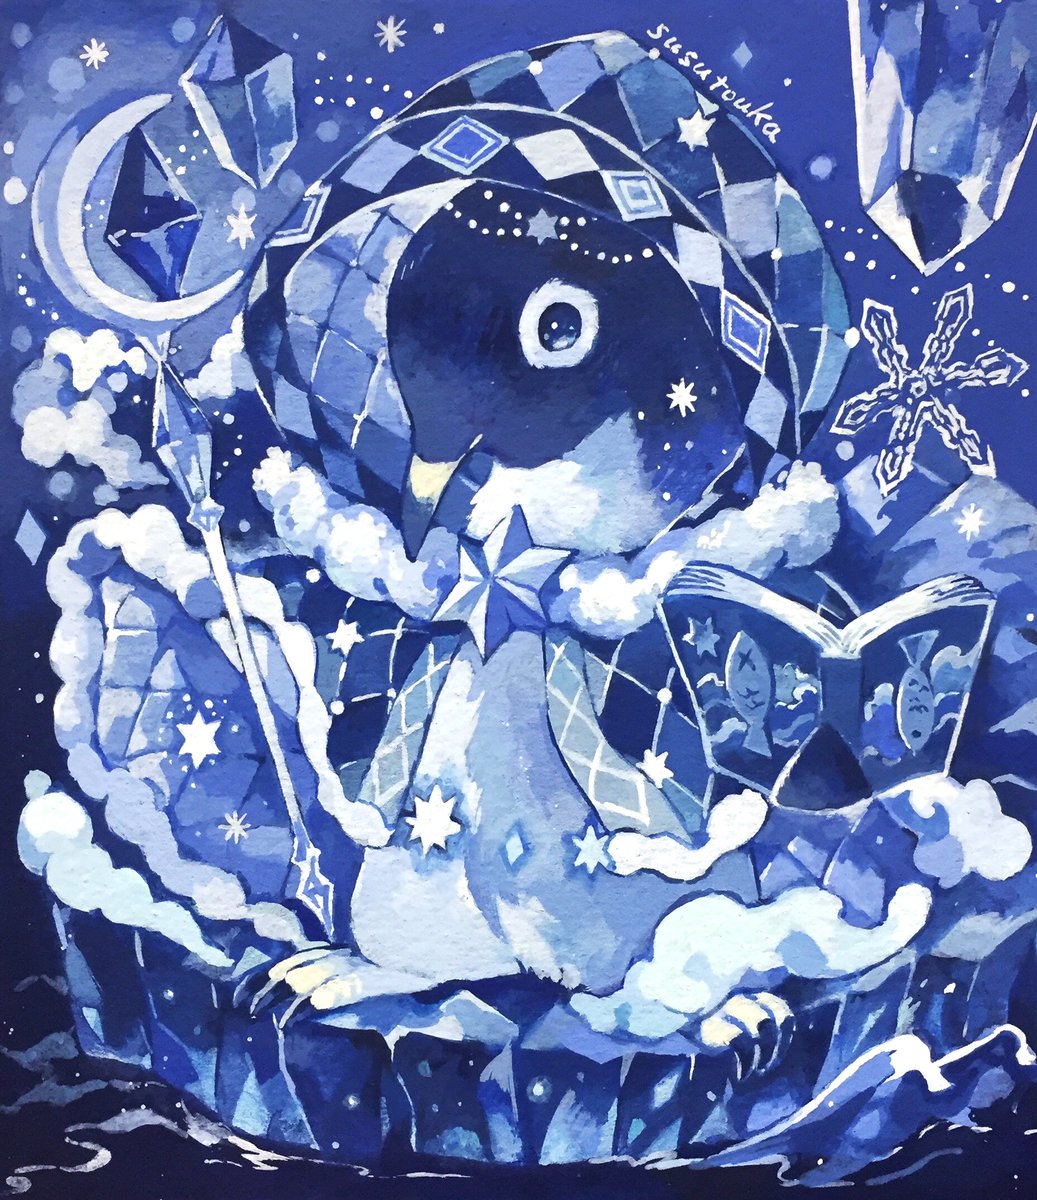 「氷の国の魔法使い 」|susutoukaのイラスト